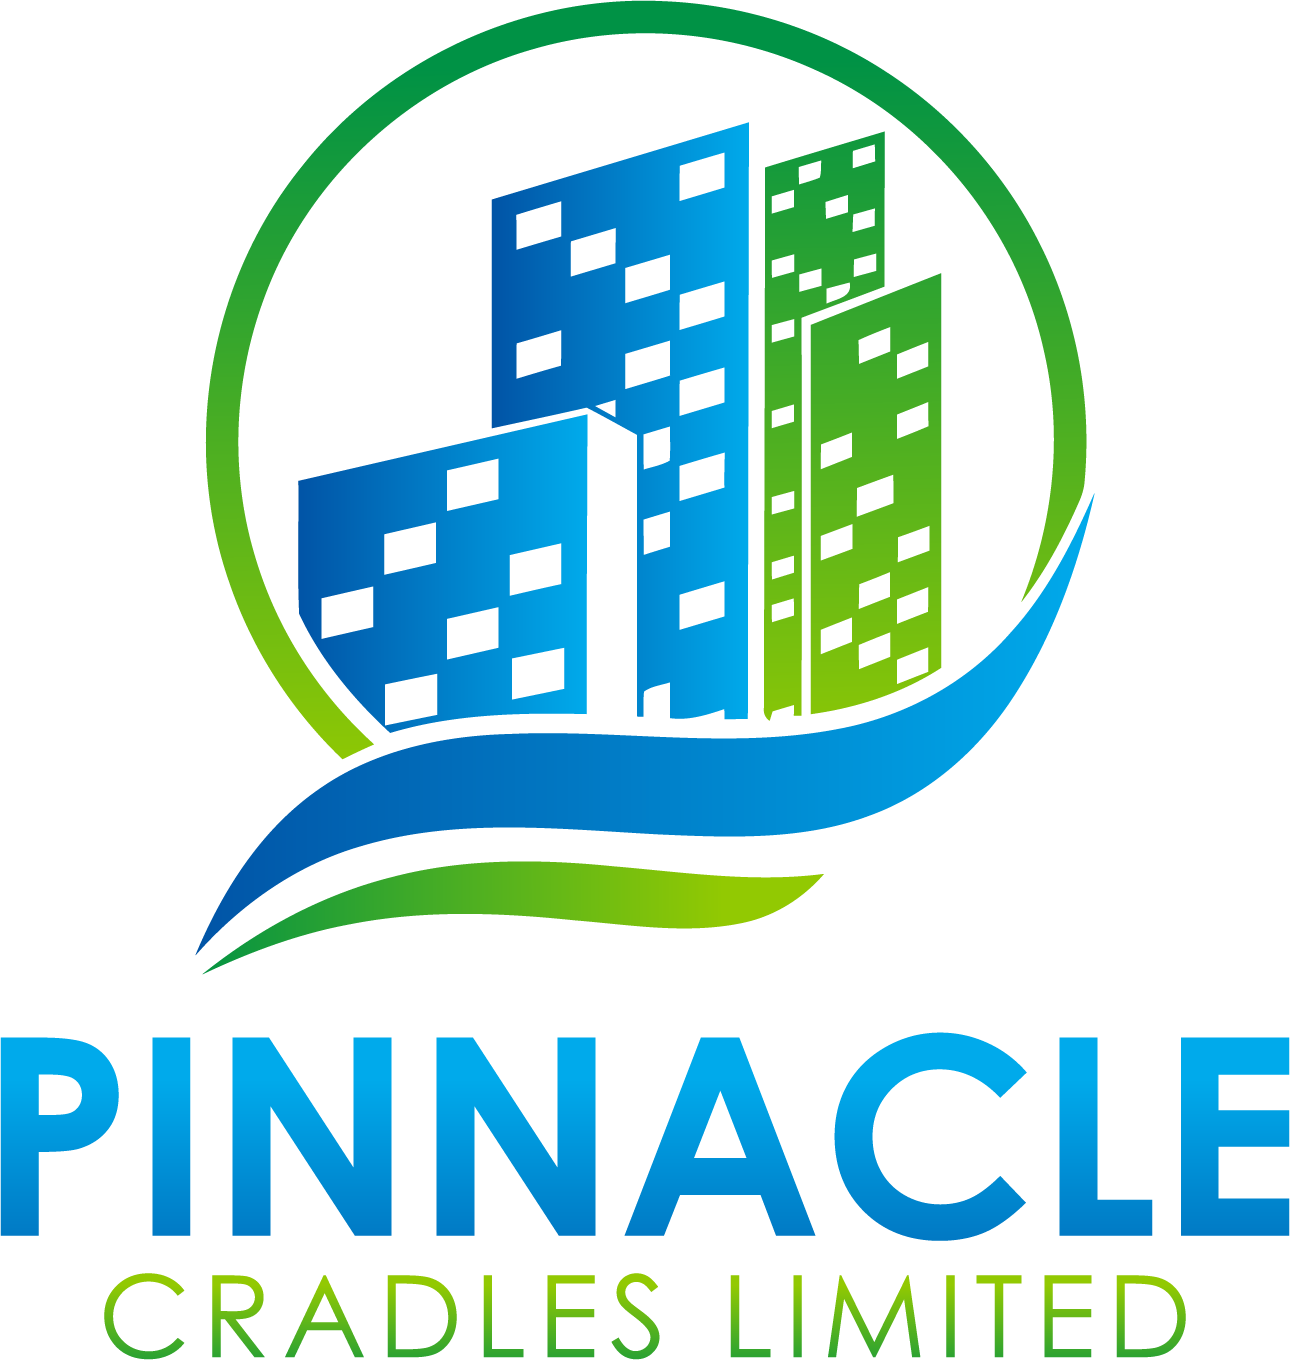 Pinnacle Cradles